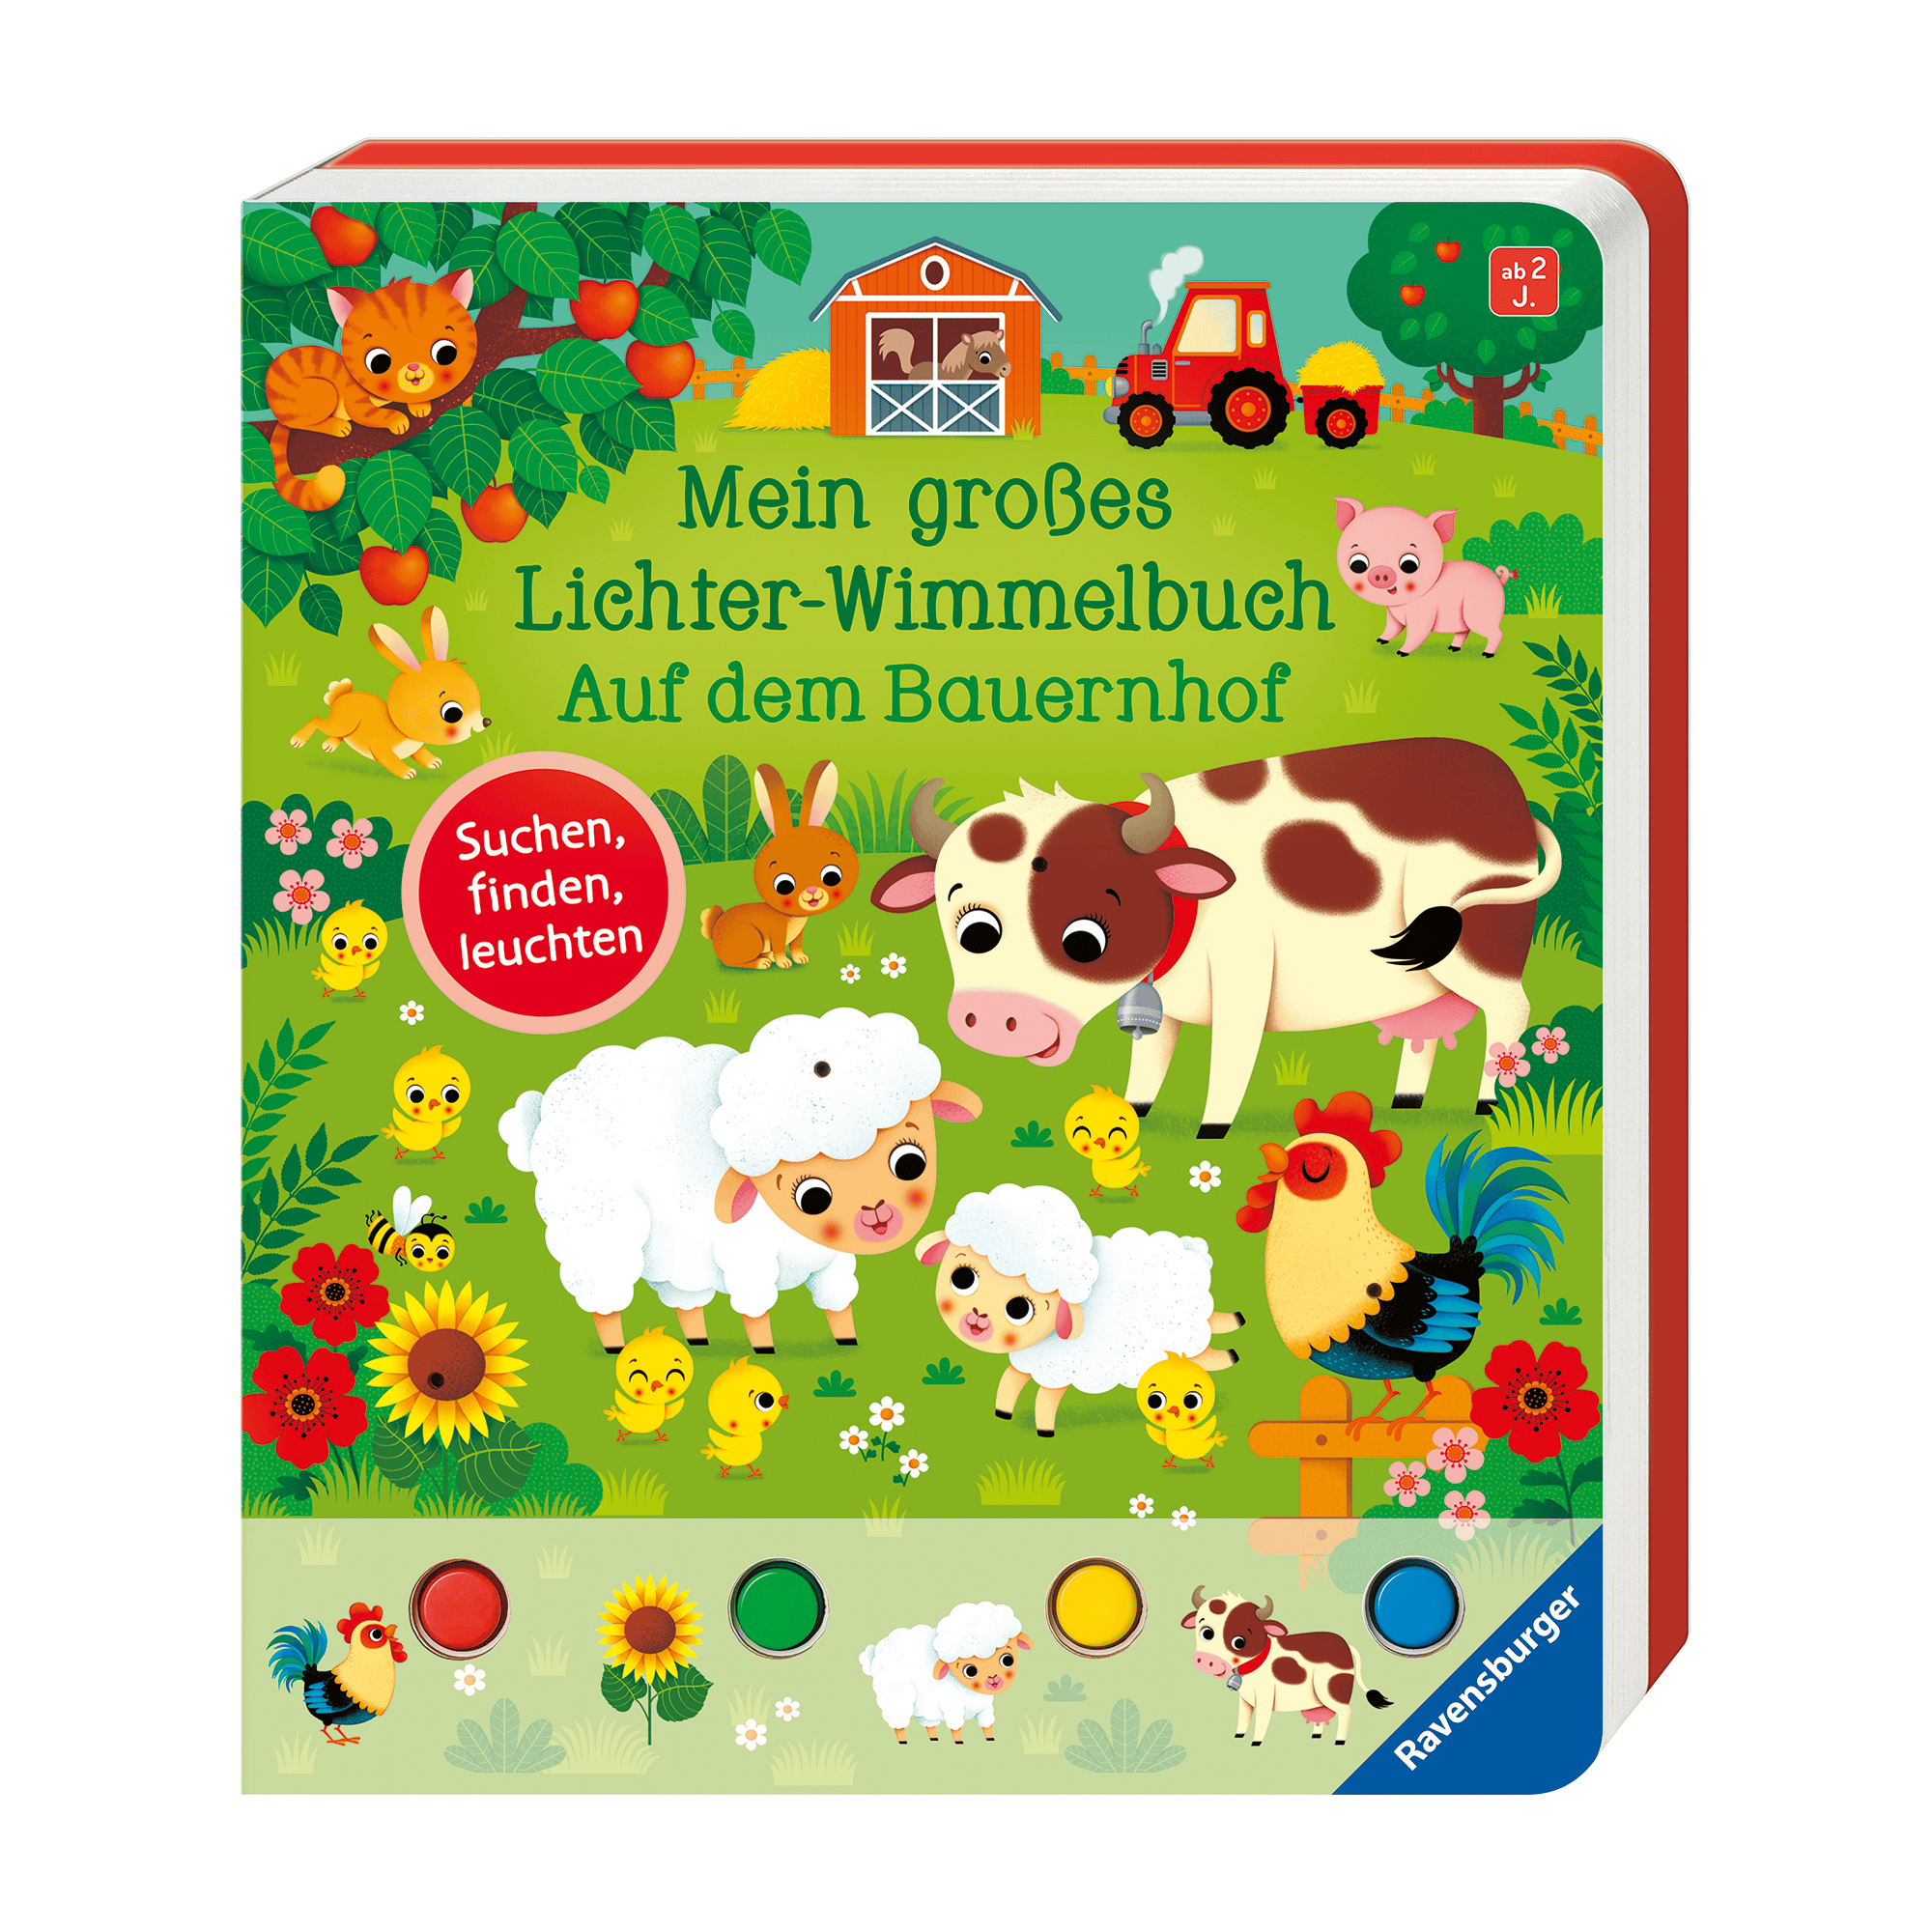 Mein großes Lichter-Wimmelbuch: Auf dem Bauernhof Ravensburger mehrfarbig 2000582863602 1